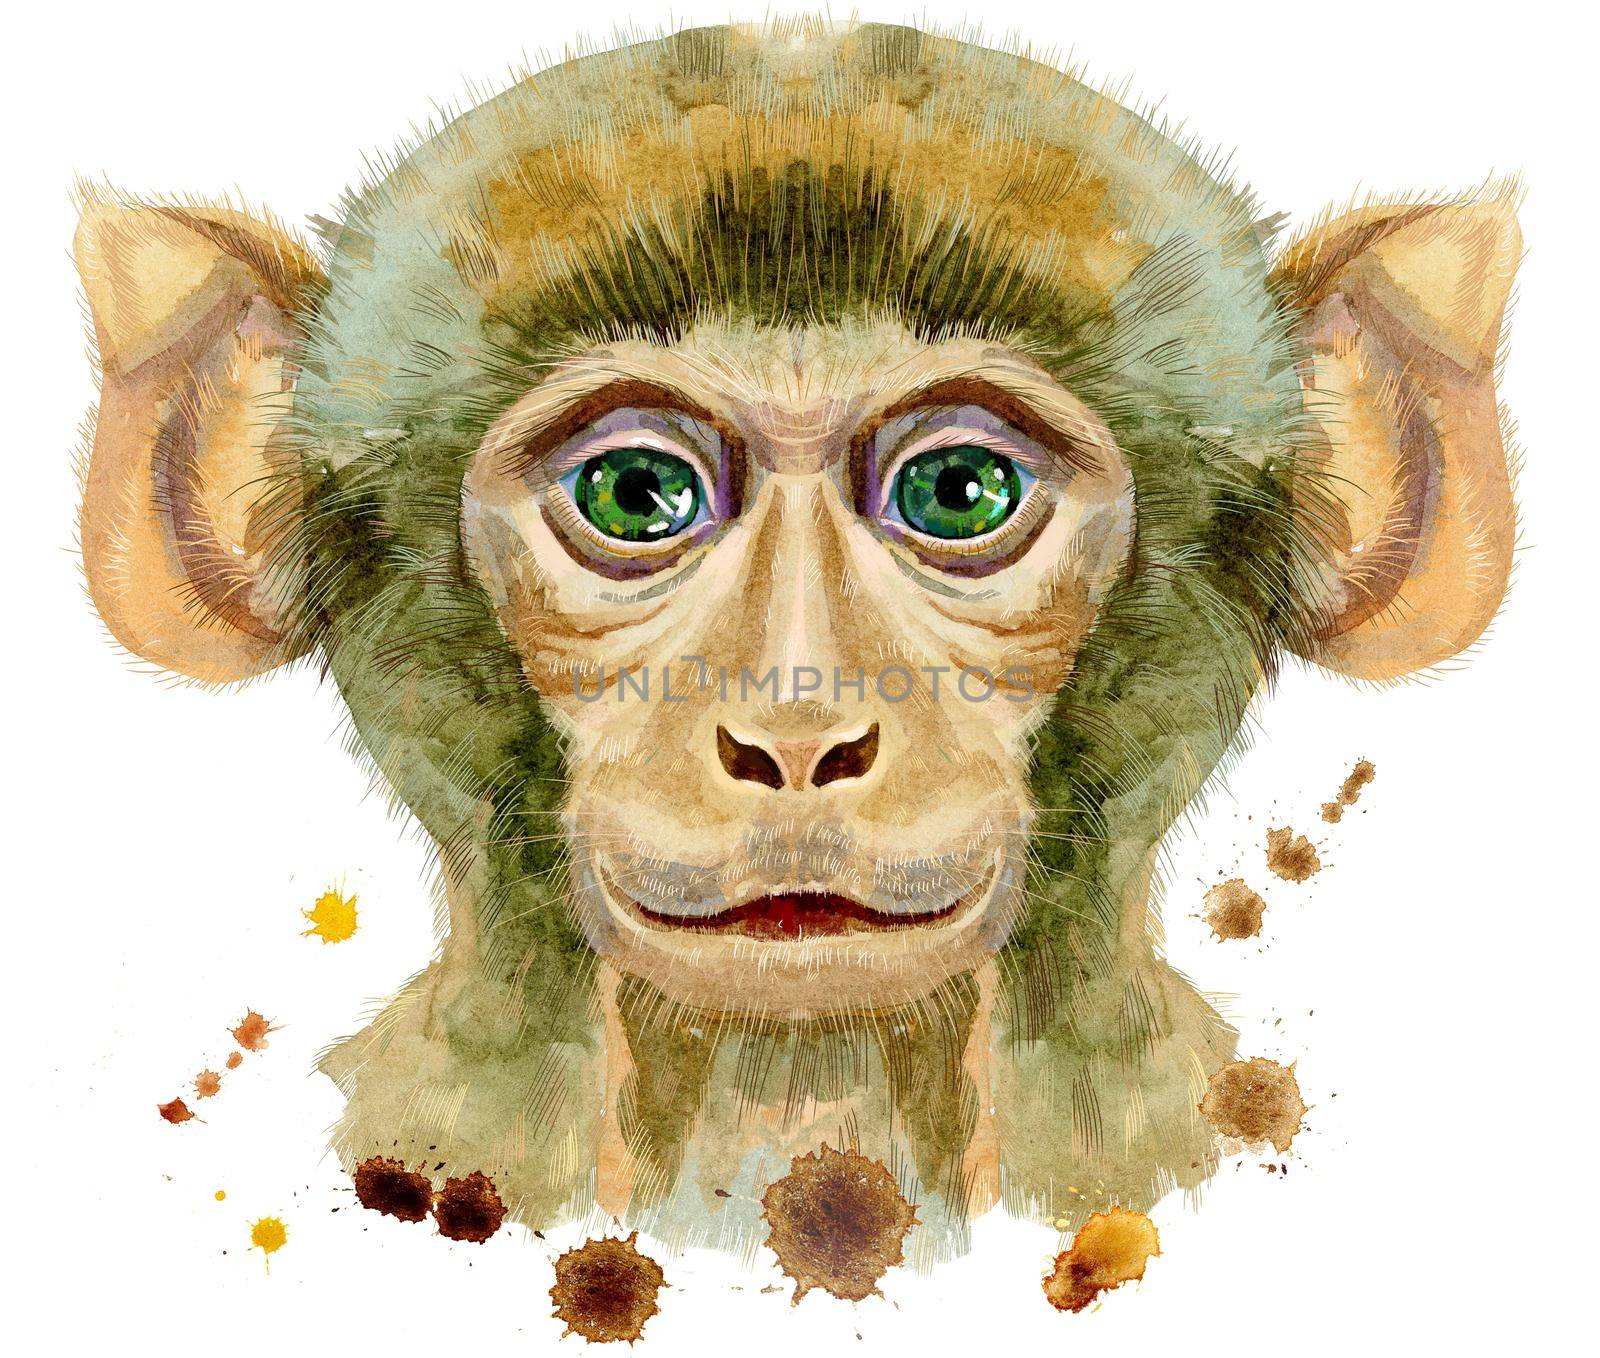 Monkey head horoscope character isolated on white background. Monkey watercolor illustration with splashes.